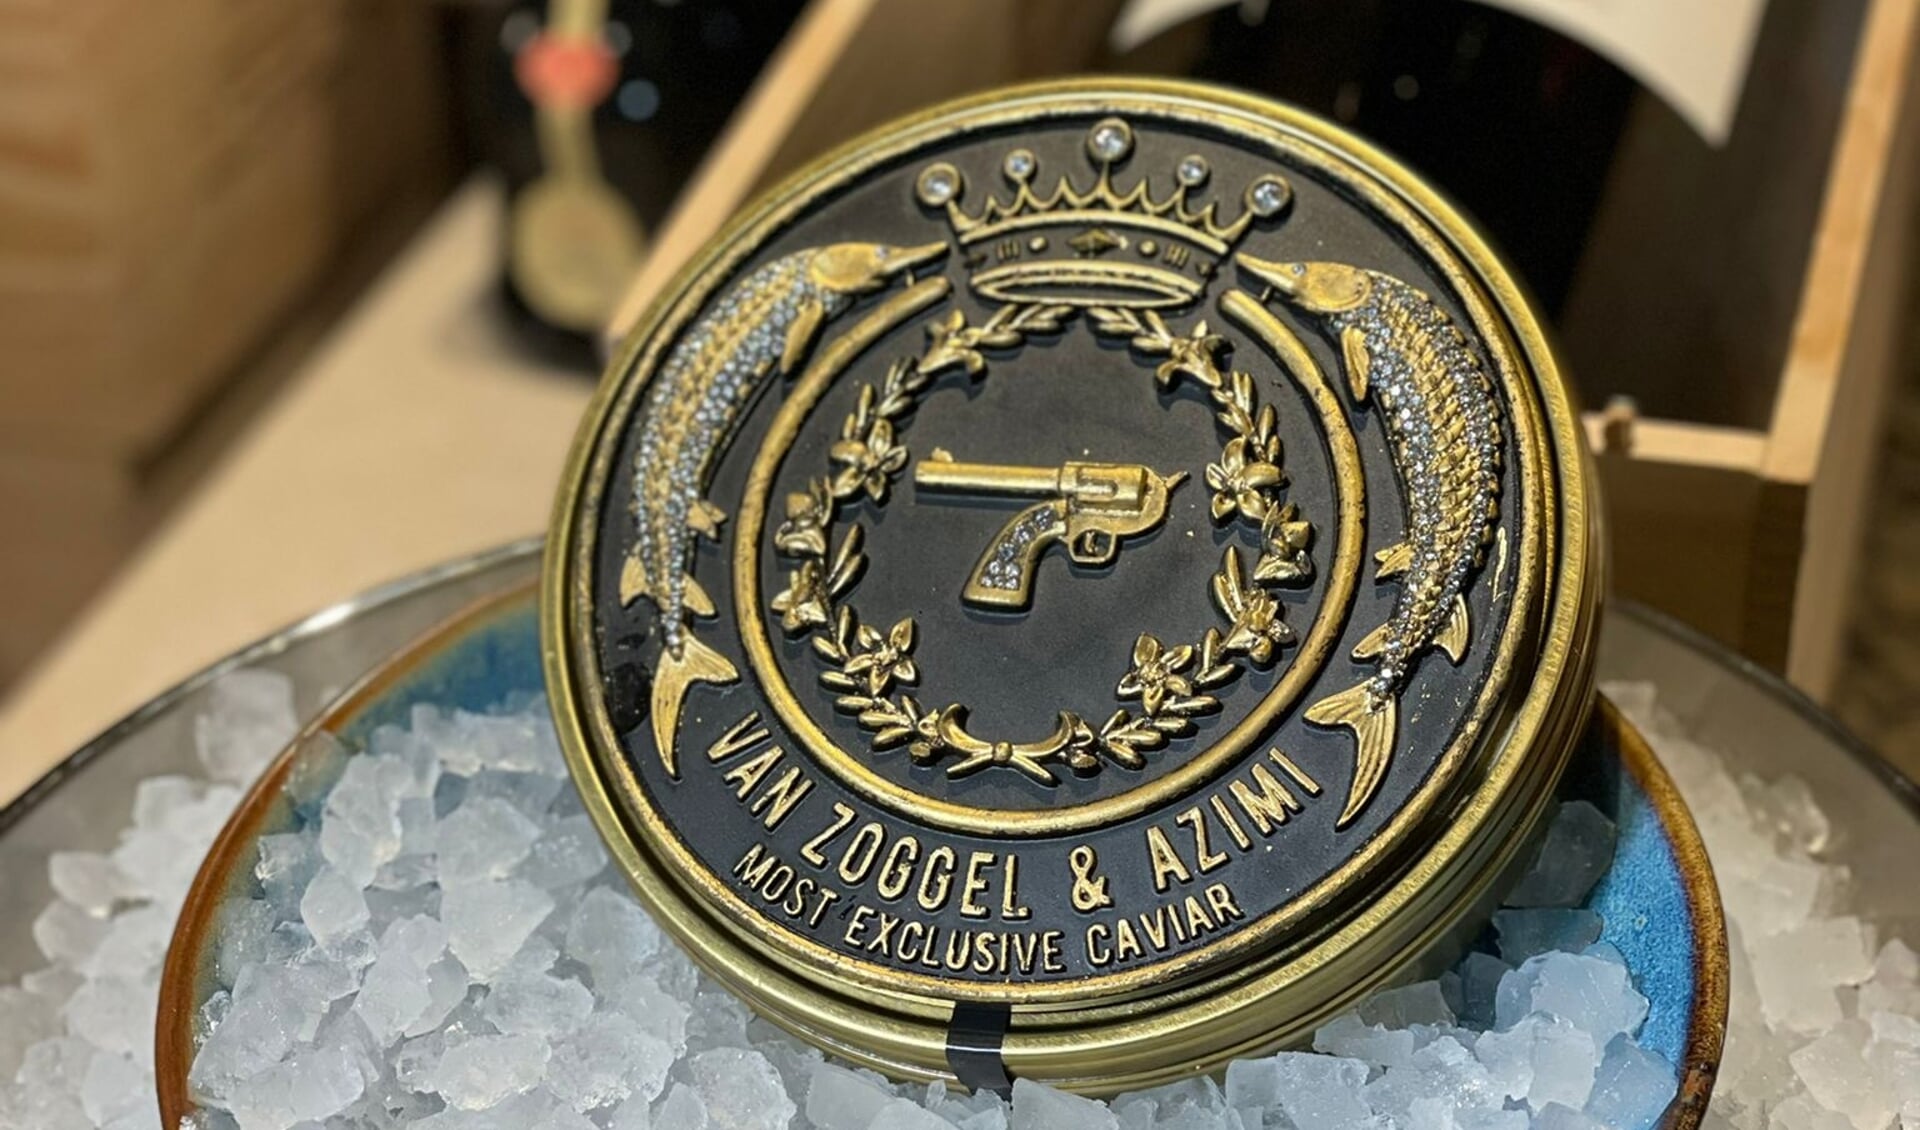 Van Zoggel & Azimi, most exclusive caviar.